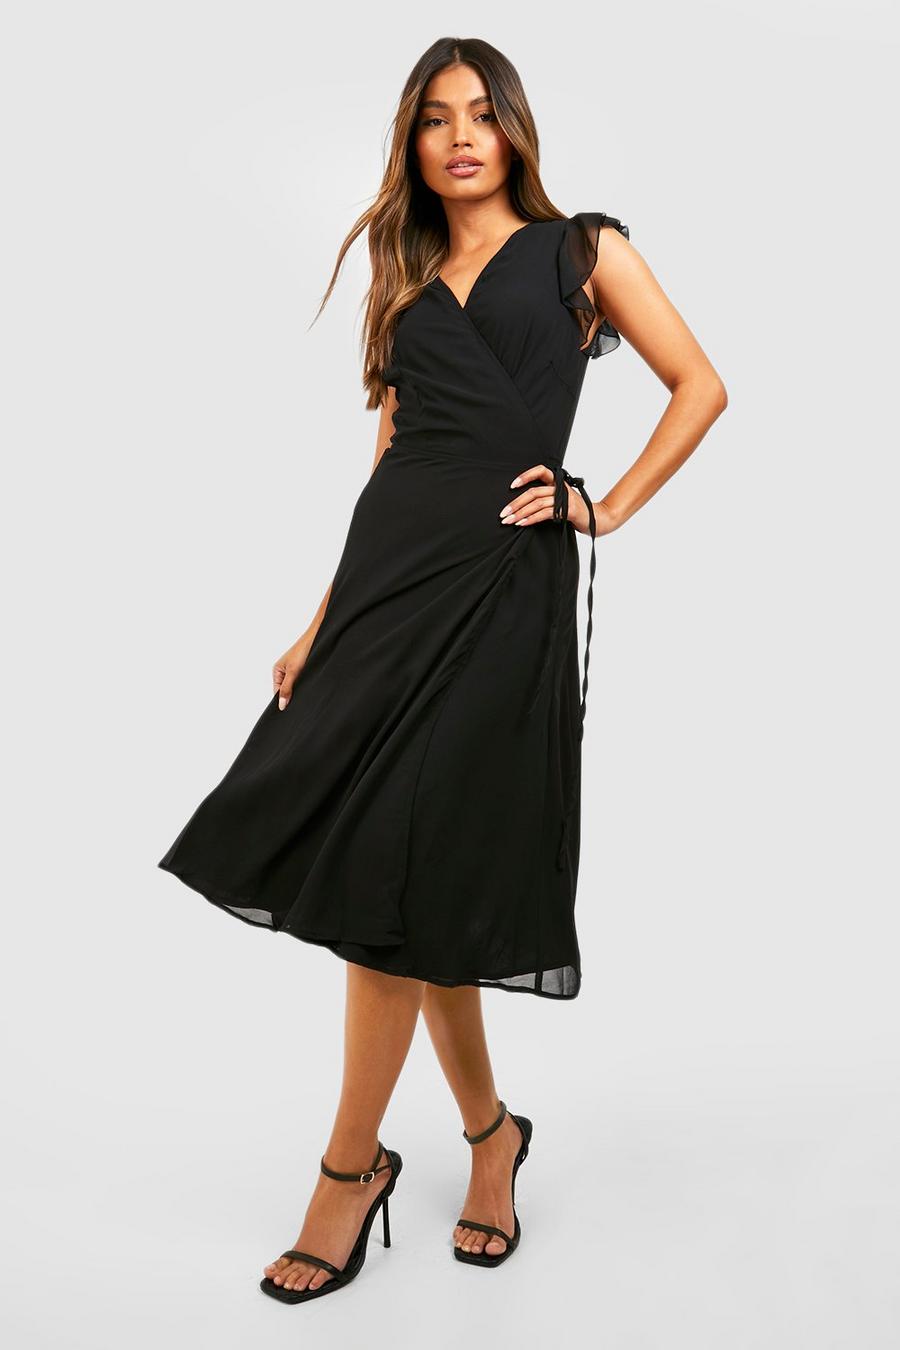 שחור nero שמלת סקייטר מעטפת מבד שיפון עם מלמלה לשושבינה image number 1